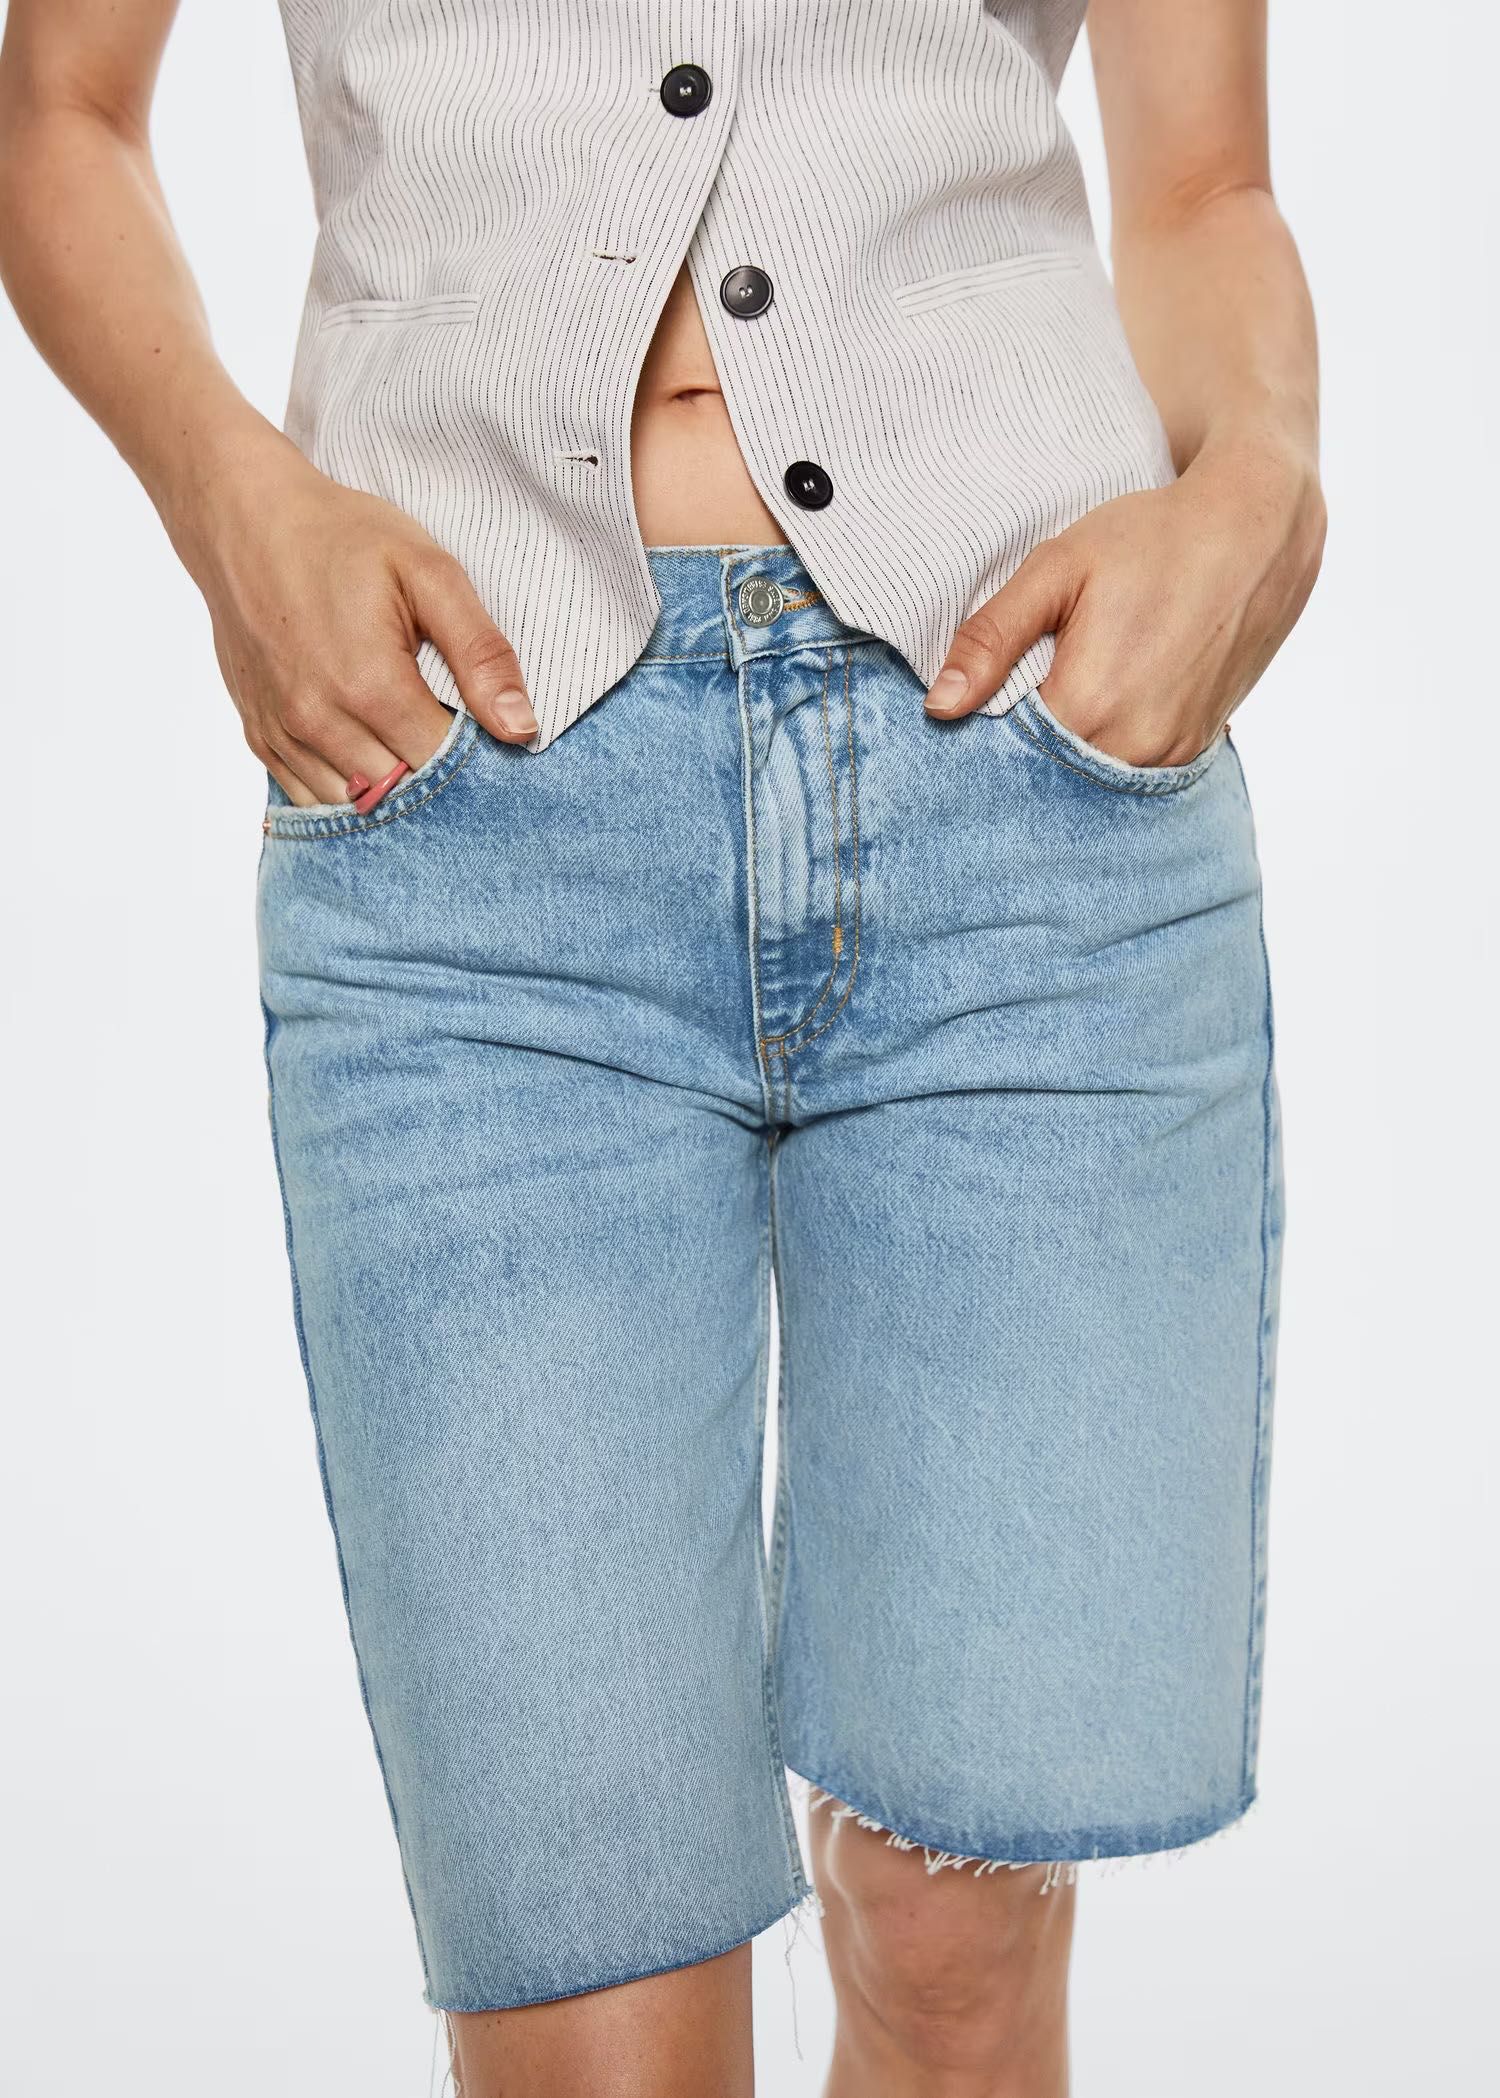 Жіночі джинсові шорти (бермуди)